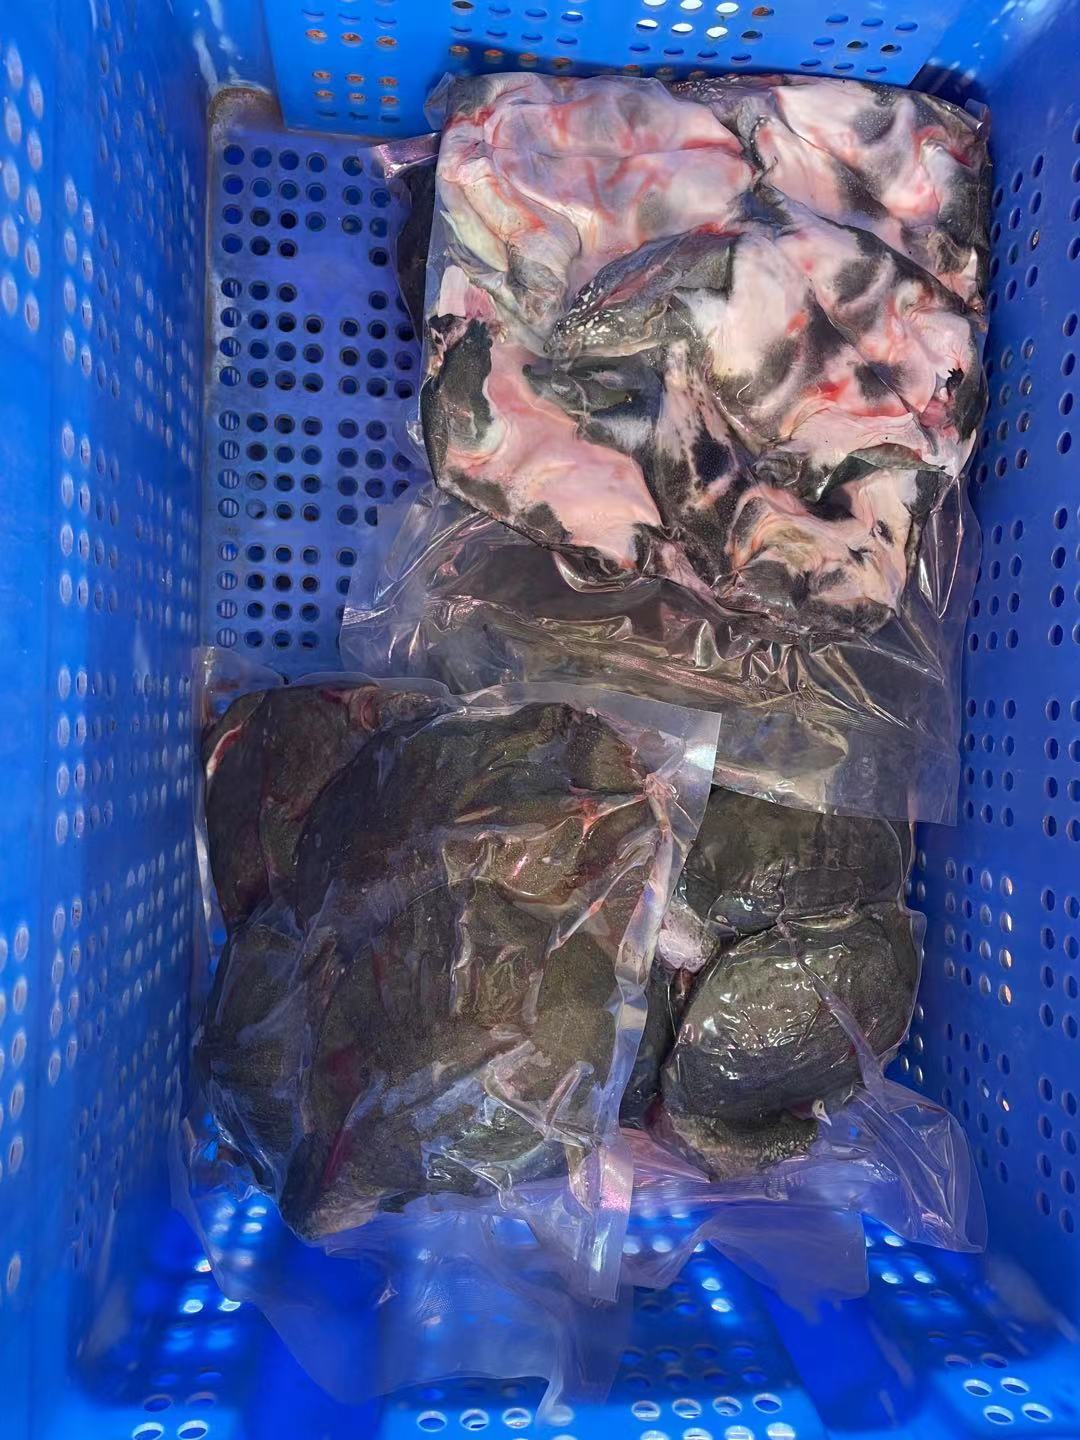 江苏供应卤甲鱼原料批发价格多少钱一只、哪有卤甲鱼原料卖图片